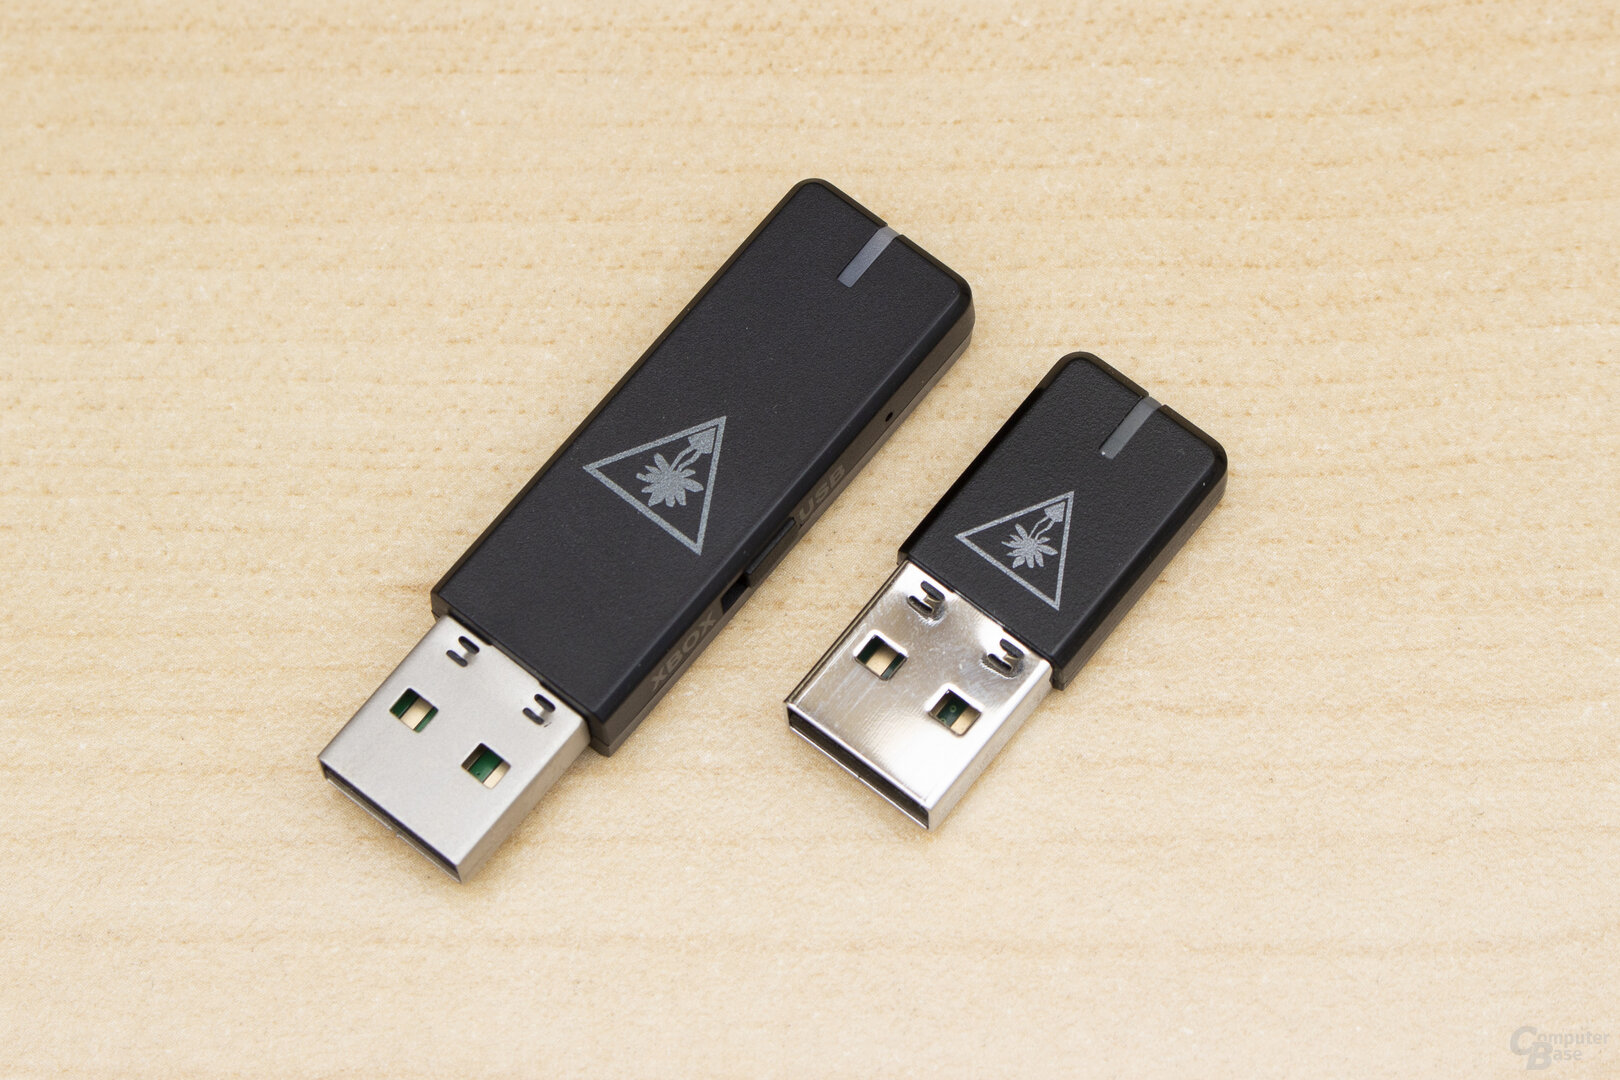 Das USB-Dongle des Stealth 600 Gen 2 Max (links) fällt etwas größer aus